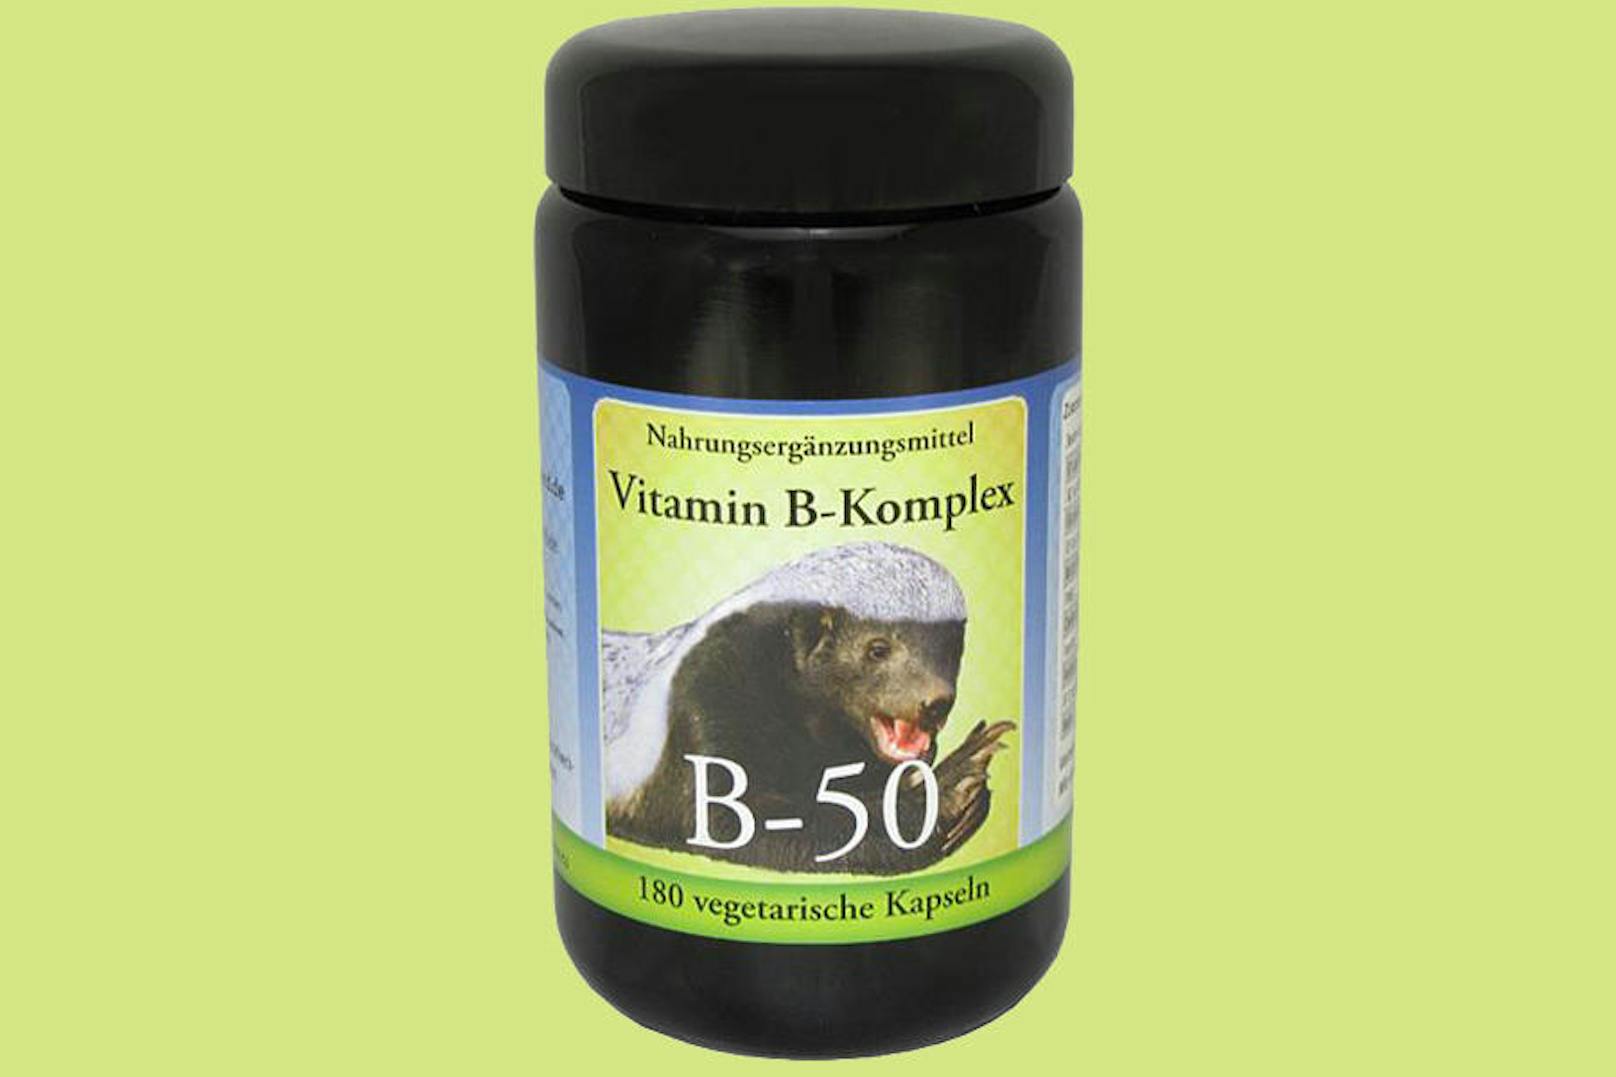 Die <b>Vitamin B-Komplex</b> Kapseln liefert eine Tagesdosis von 50 Milligramm Vitamin B6 (Pyrdoxin), was über längeren Zeitraum Nervenschäden hervorrufen kann.